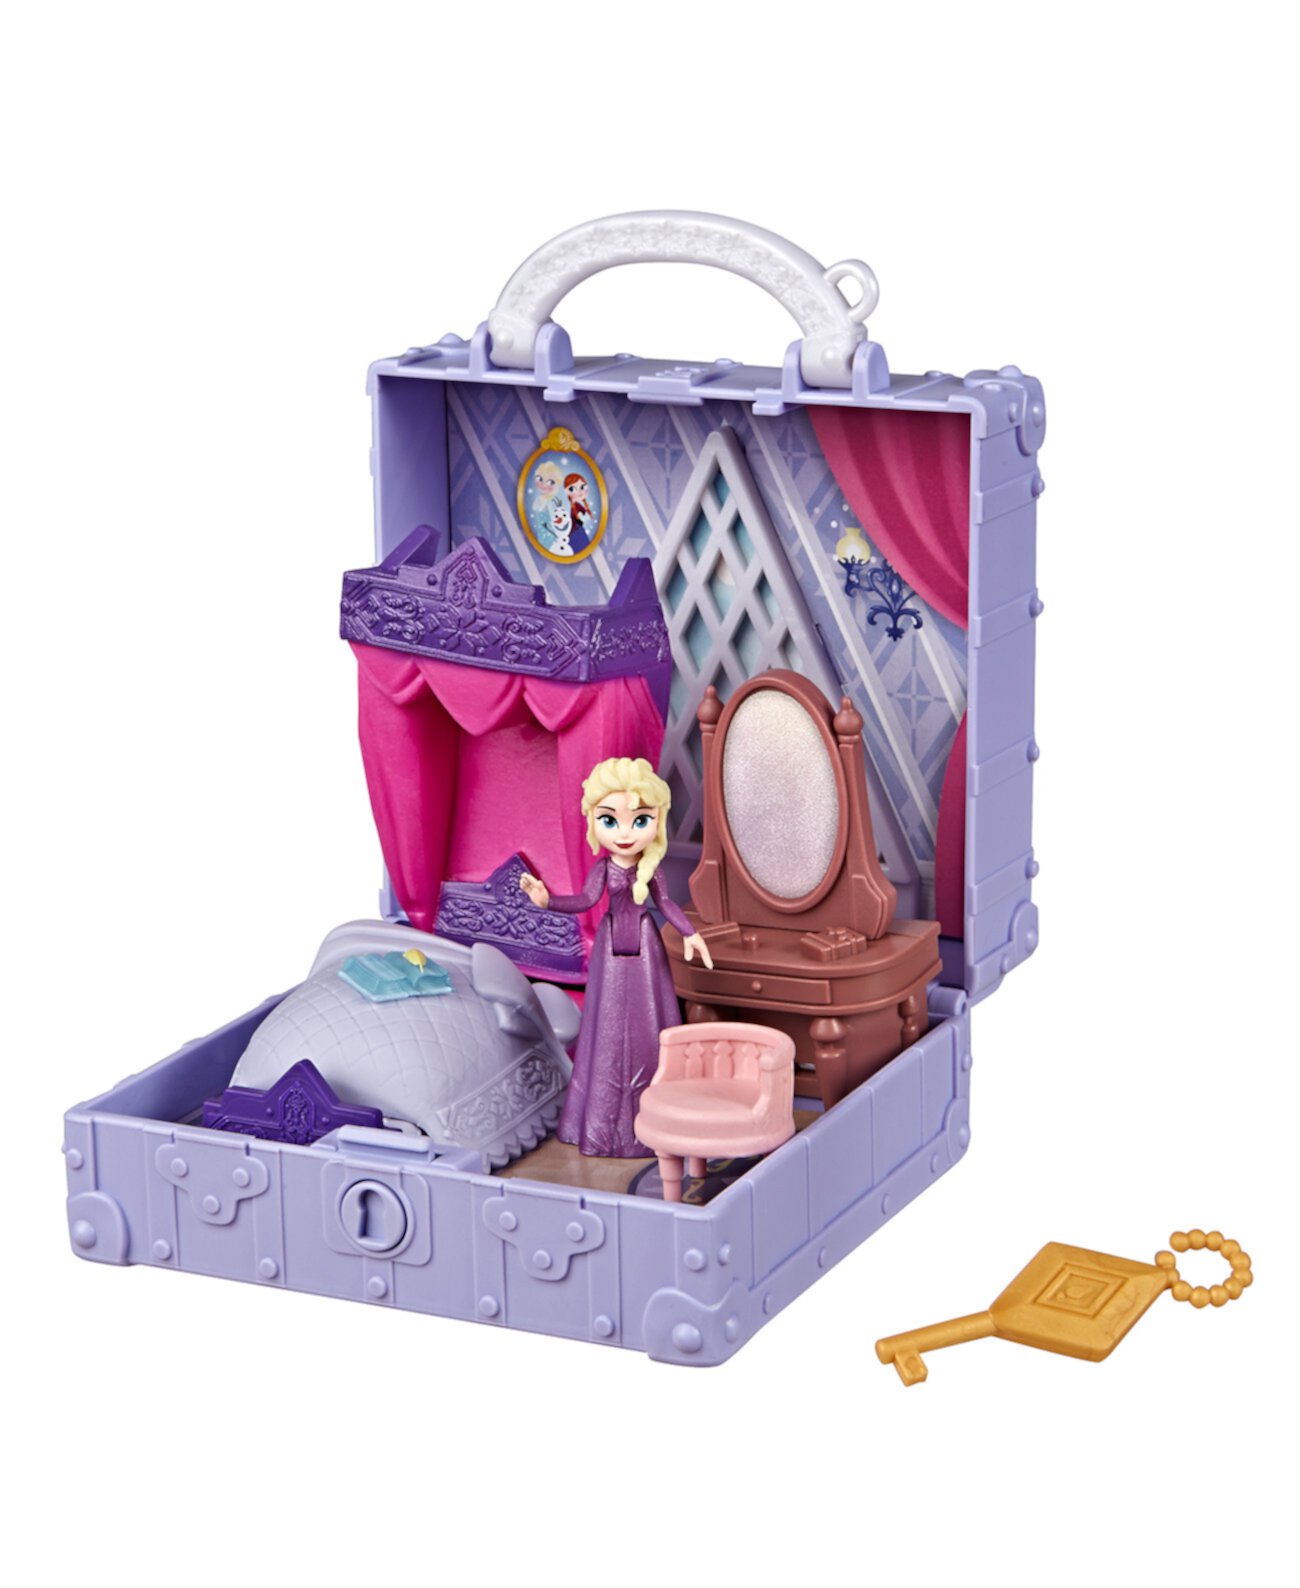 Всплывающий игровой набор для спальни Эльзы с ручкой, включающий куклу Эльзы, дневник, стул и одеяла, Disney Movie Pop Adventures Frozen